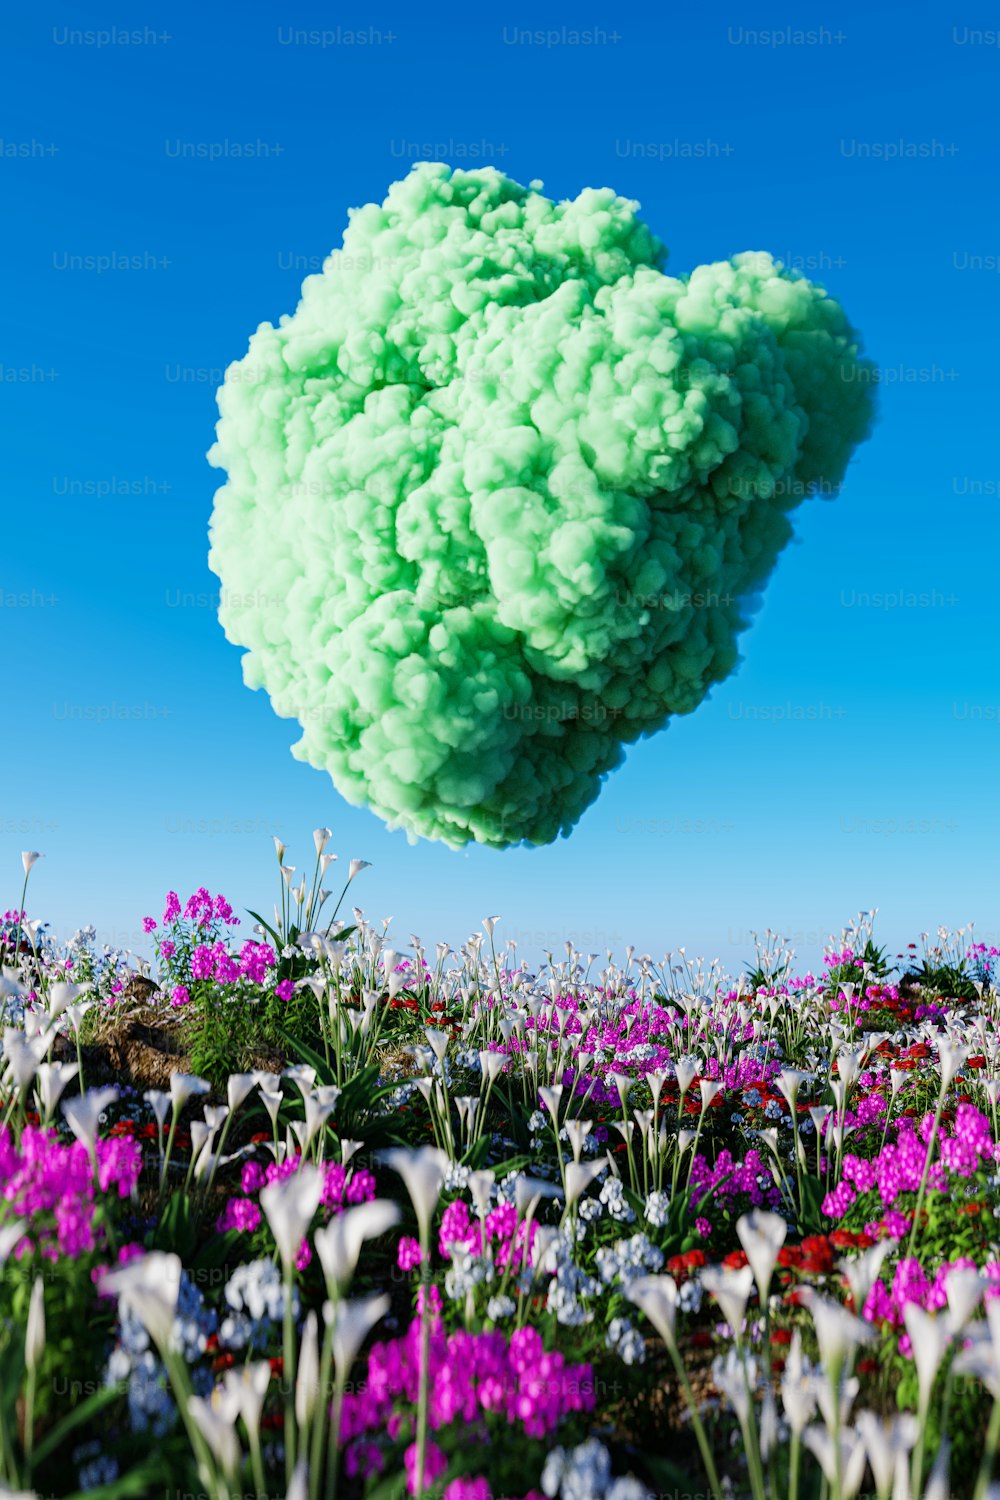 un nuage de fleurs vertes et violettes flottant dans l’air